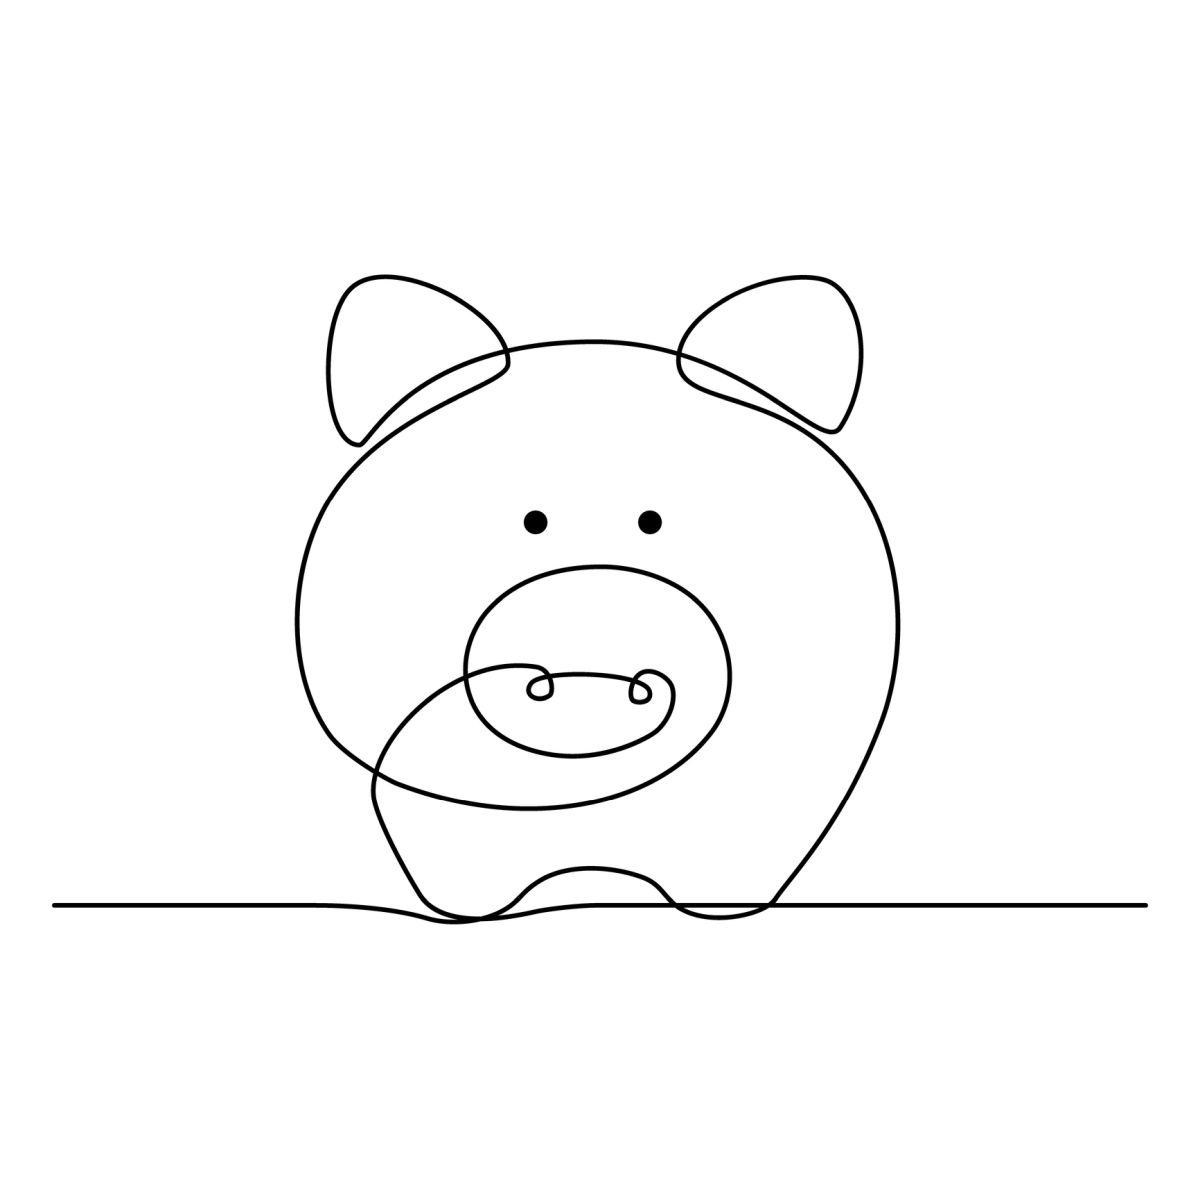 Как нарисовать свинью: 10 простых проектов рисования